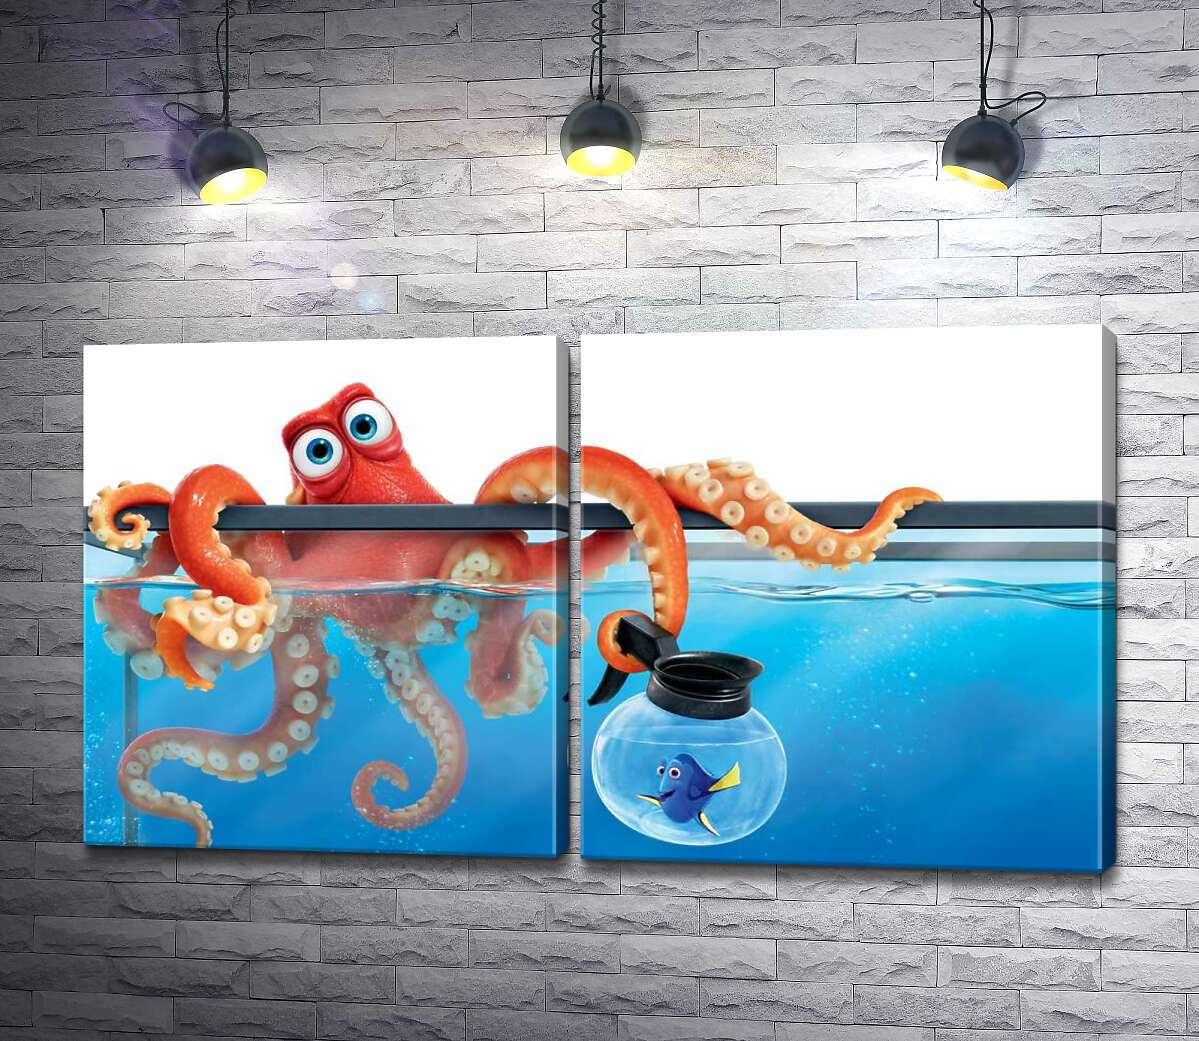 модульная картина Герои мультфильма "В поисках Дори" (Finding Dory) осьминог Хэнк и рыба Дори в аквариумах